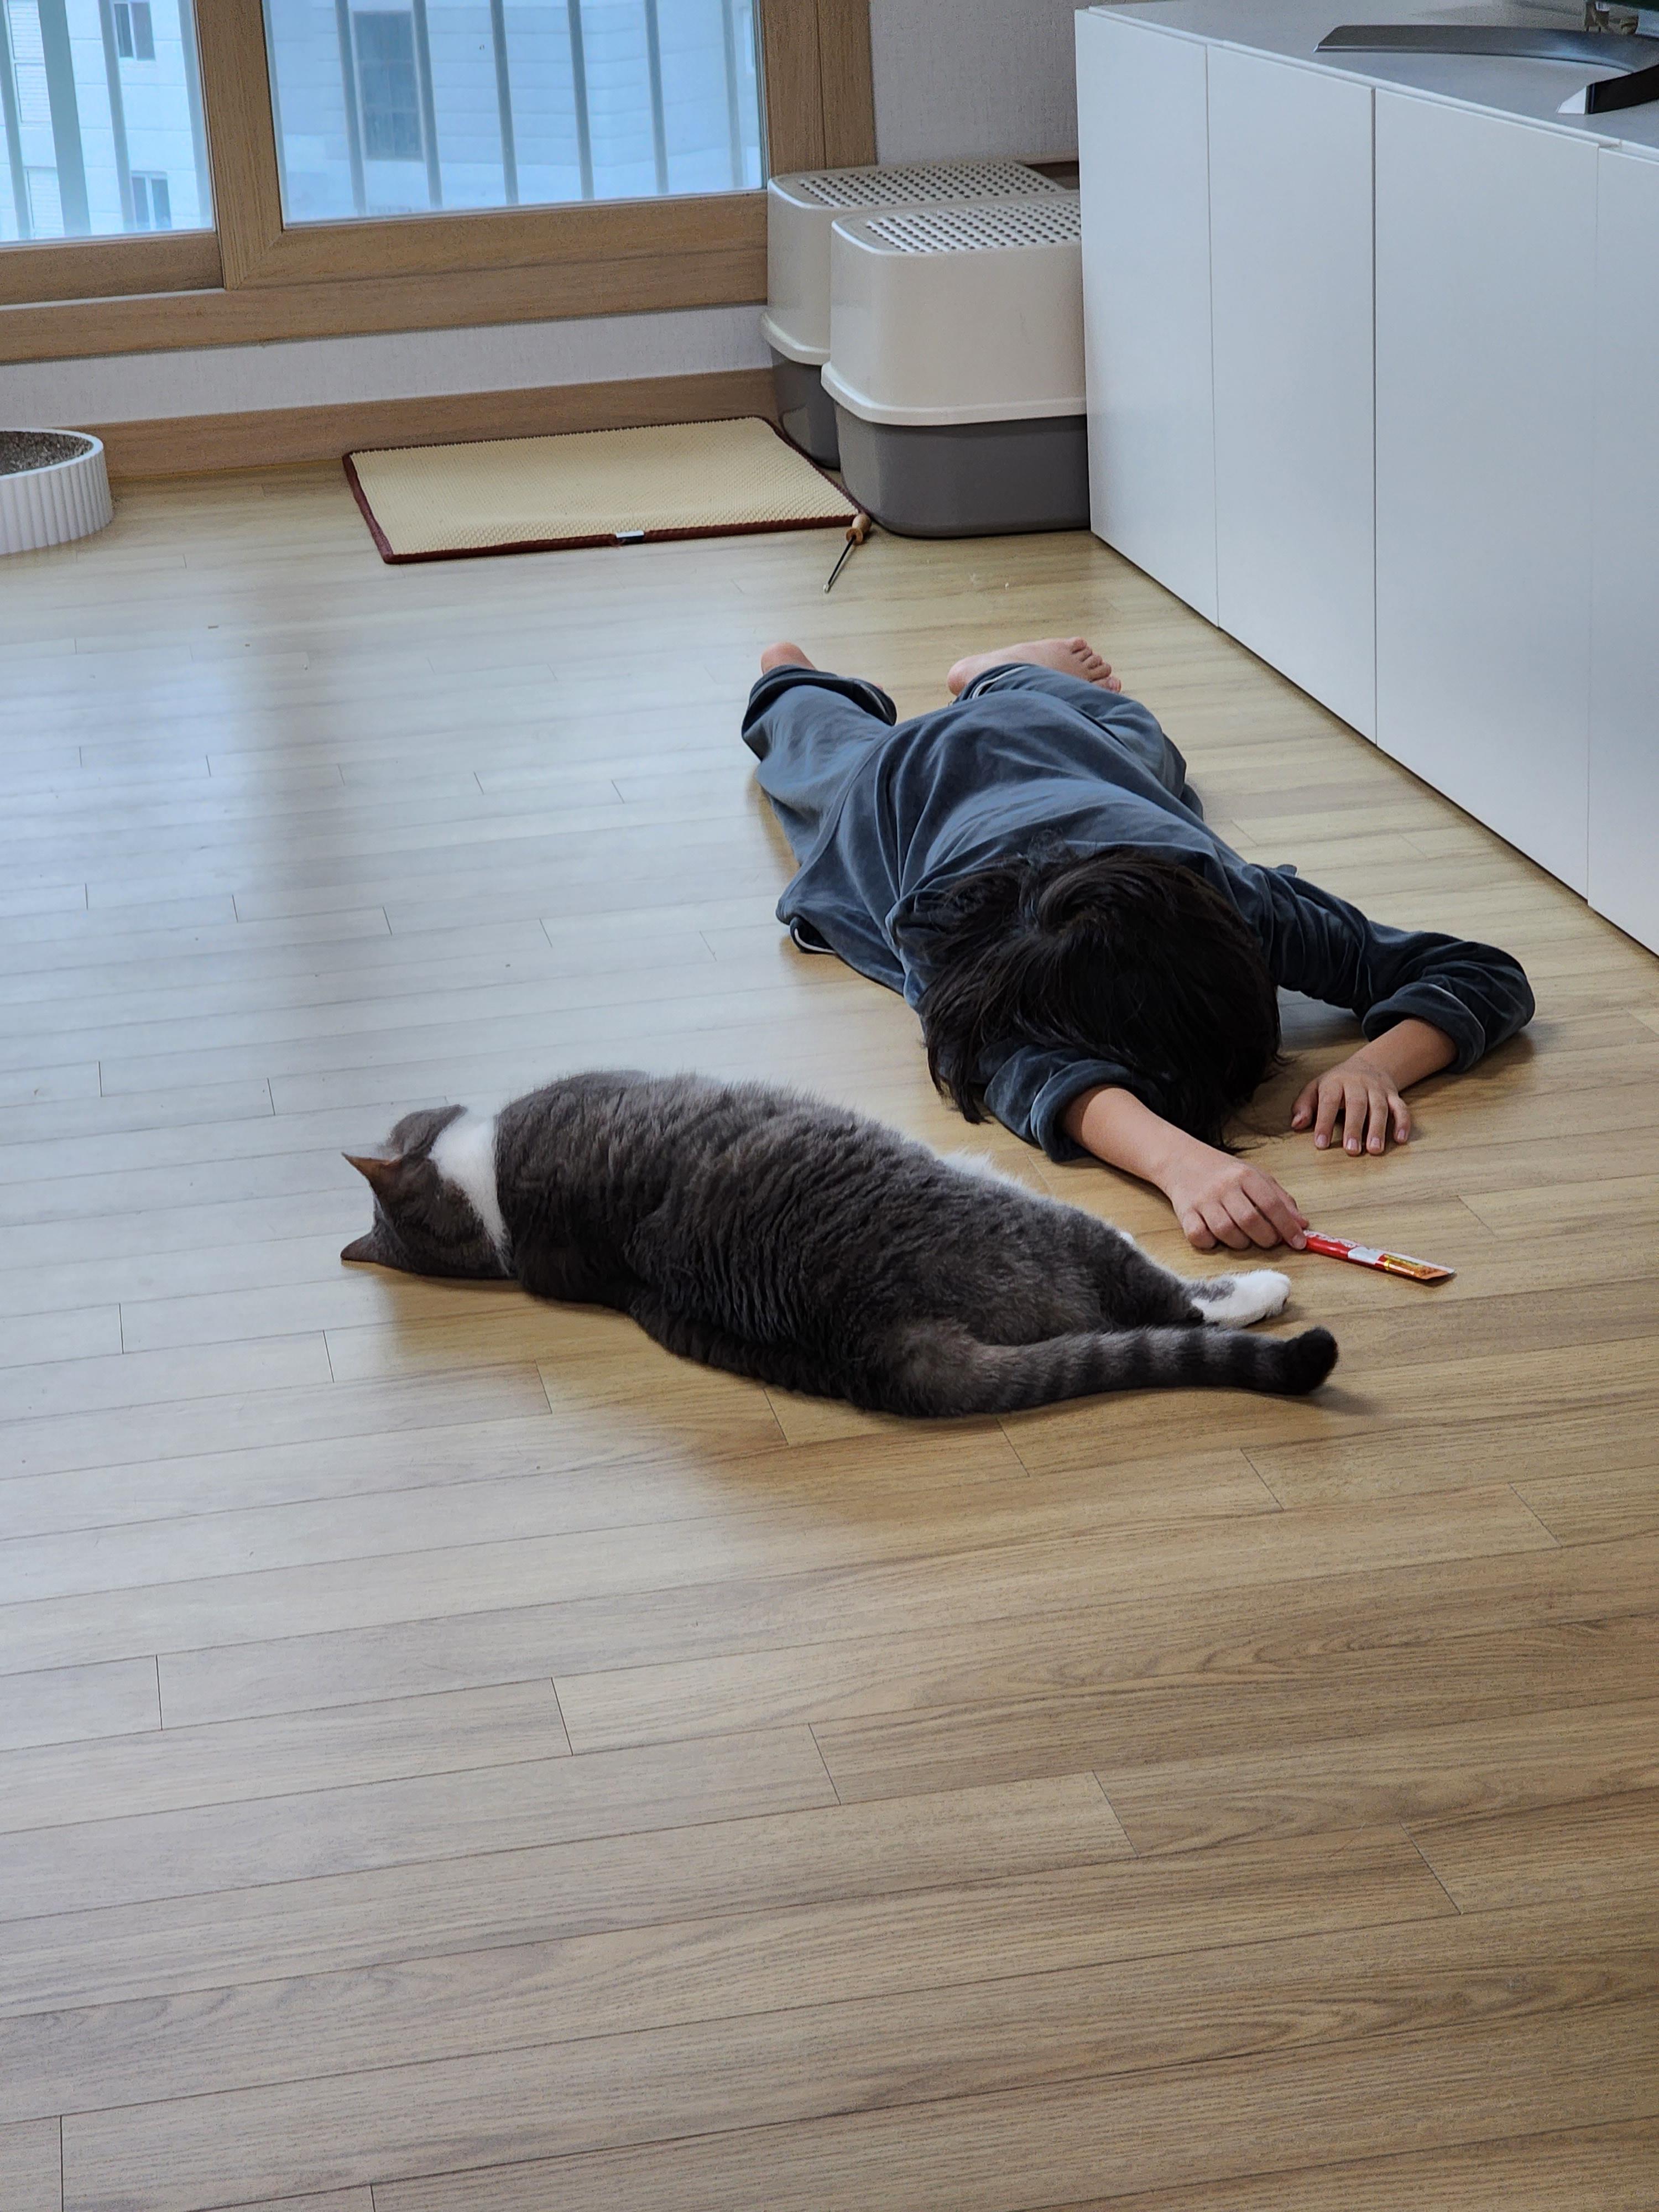 브리티쉬 숏헤어 화이트 그레이 두마리 고양이 집사